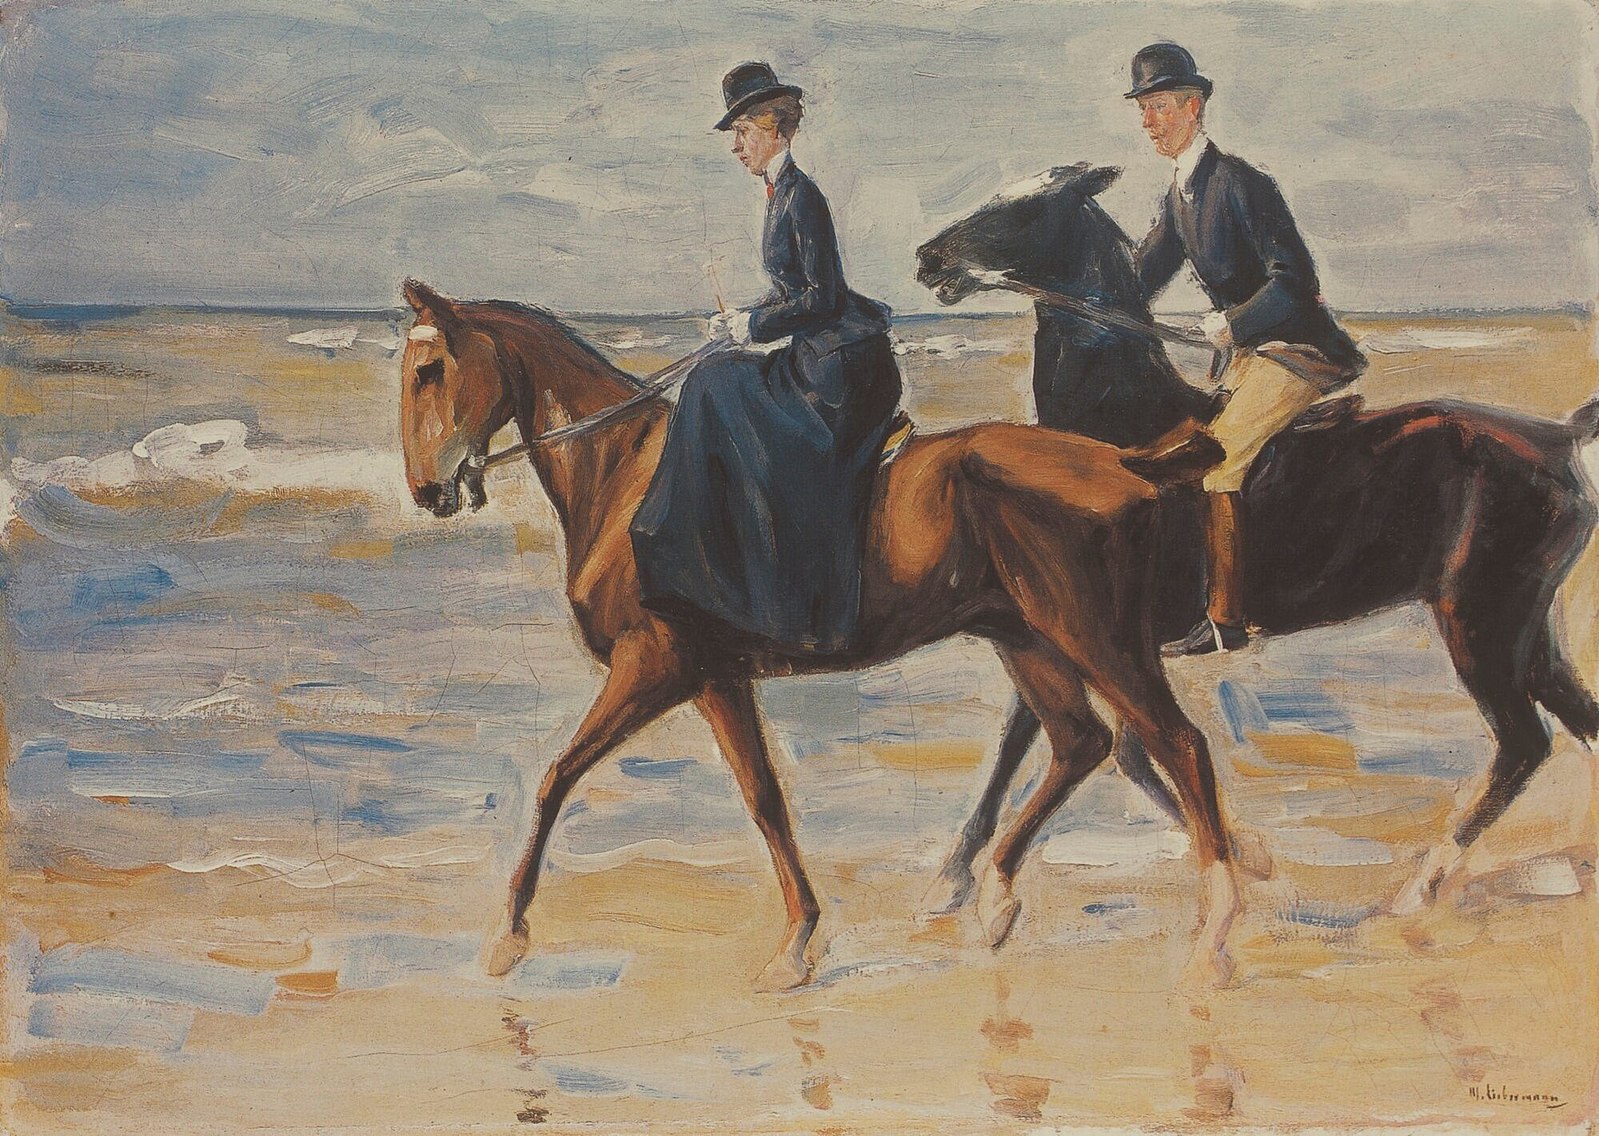 Max_Liebermann_-_Reiter_und_Reiterin_am_Strand_(1903).jpg